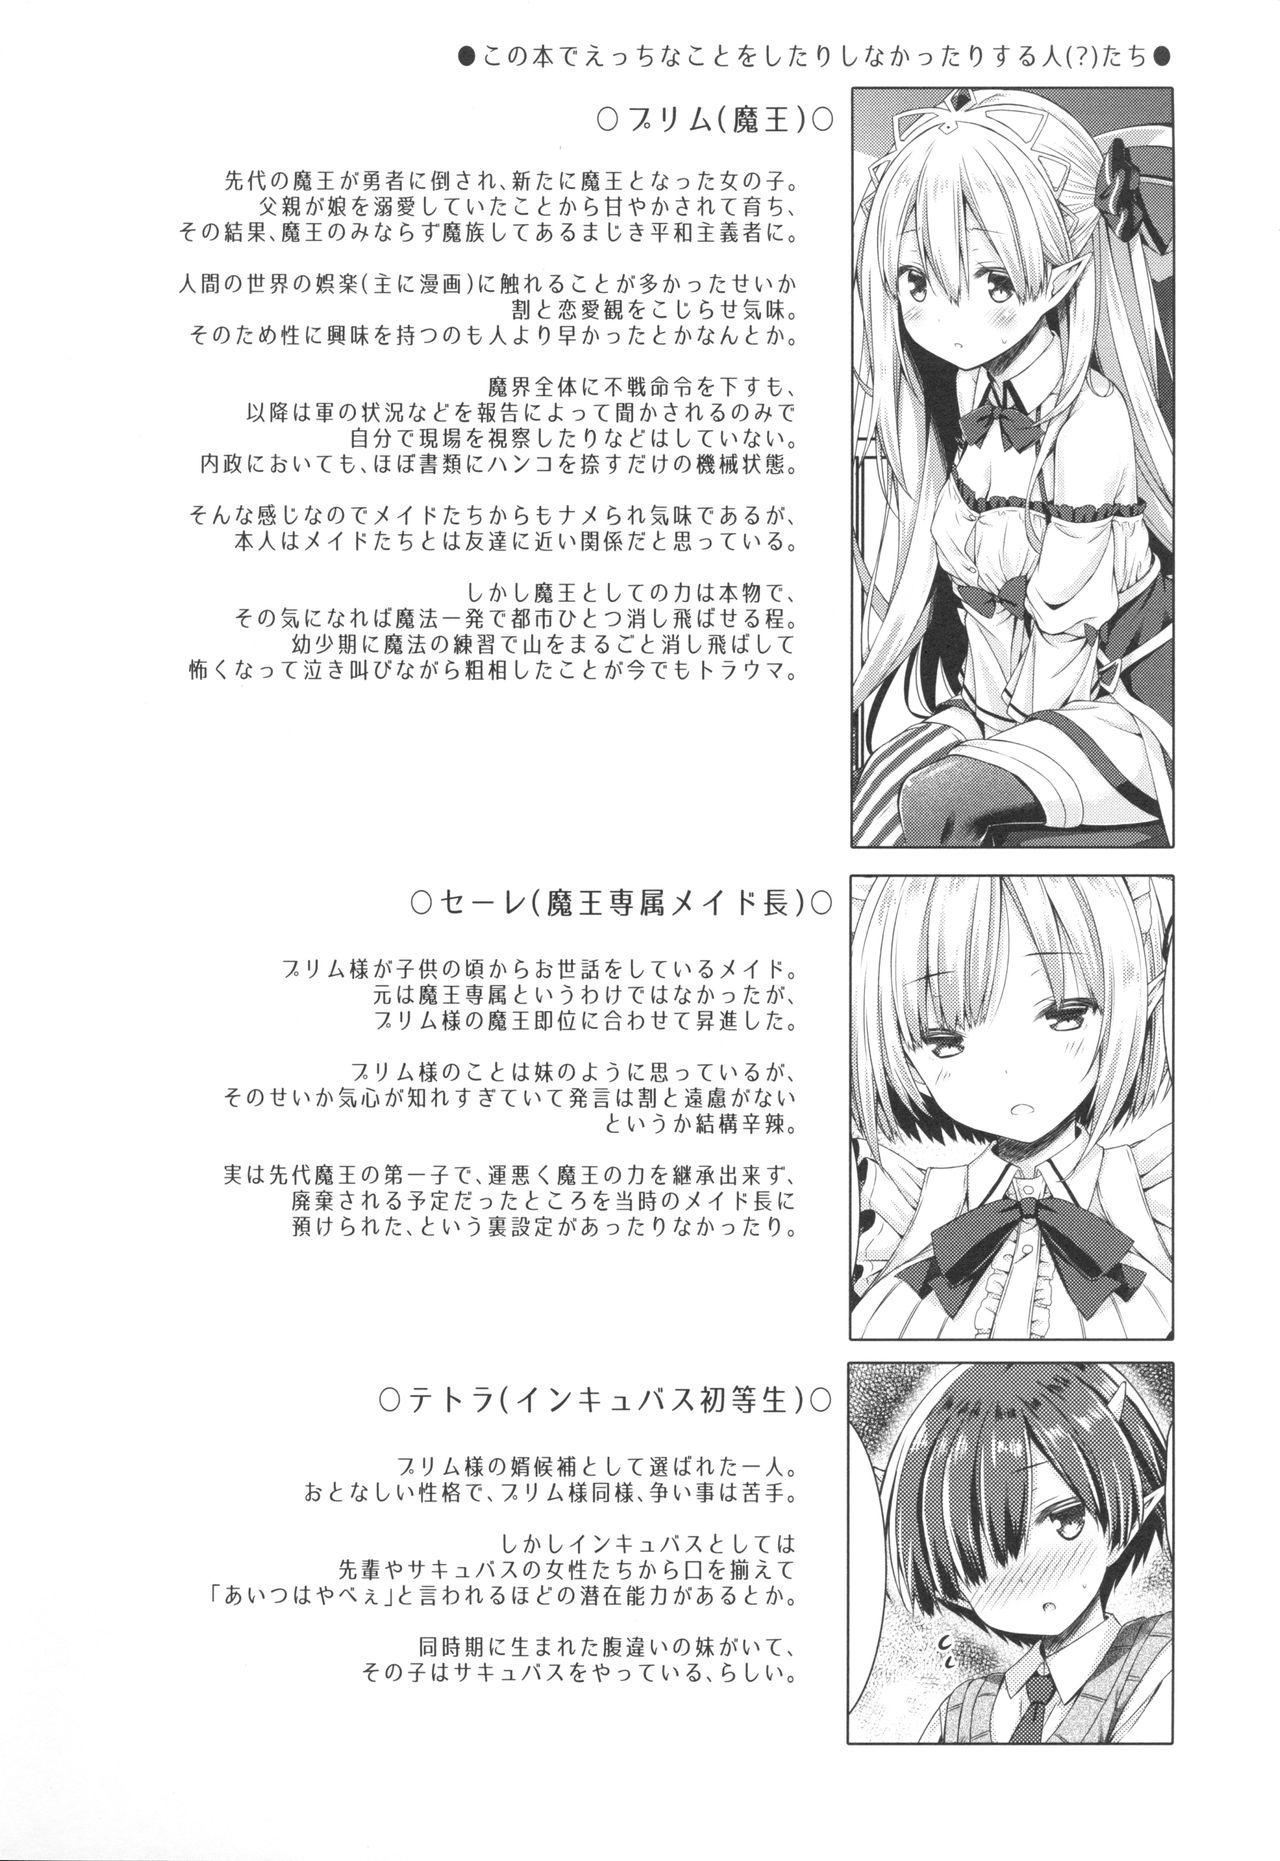 8teenxxx Maou-sama o Taosu no ni Yuusha mo Seiken mo Irimasen. - Original Bed - Page 3